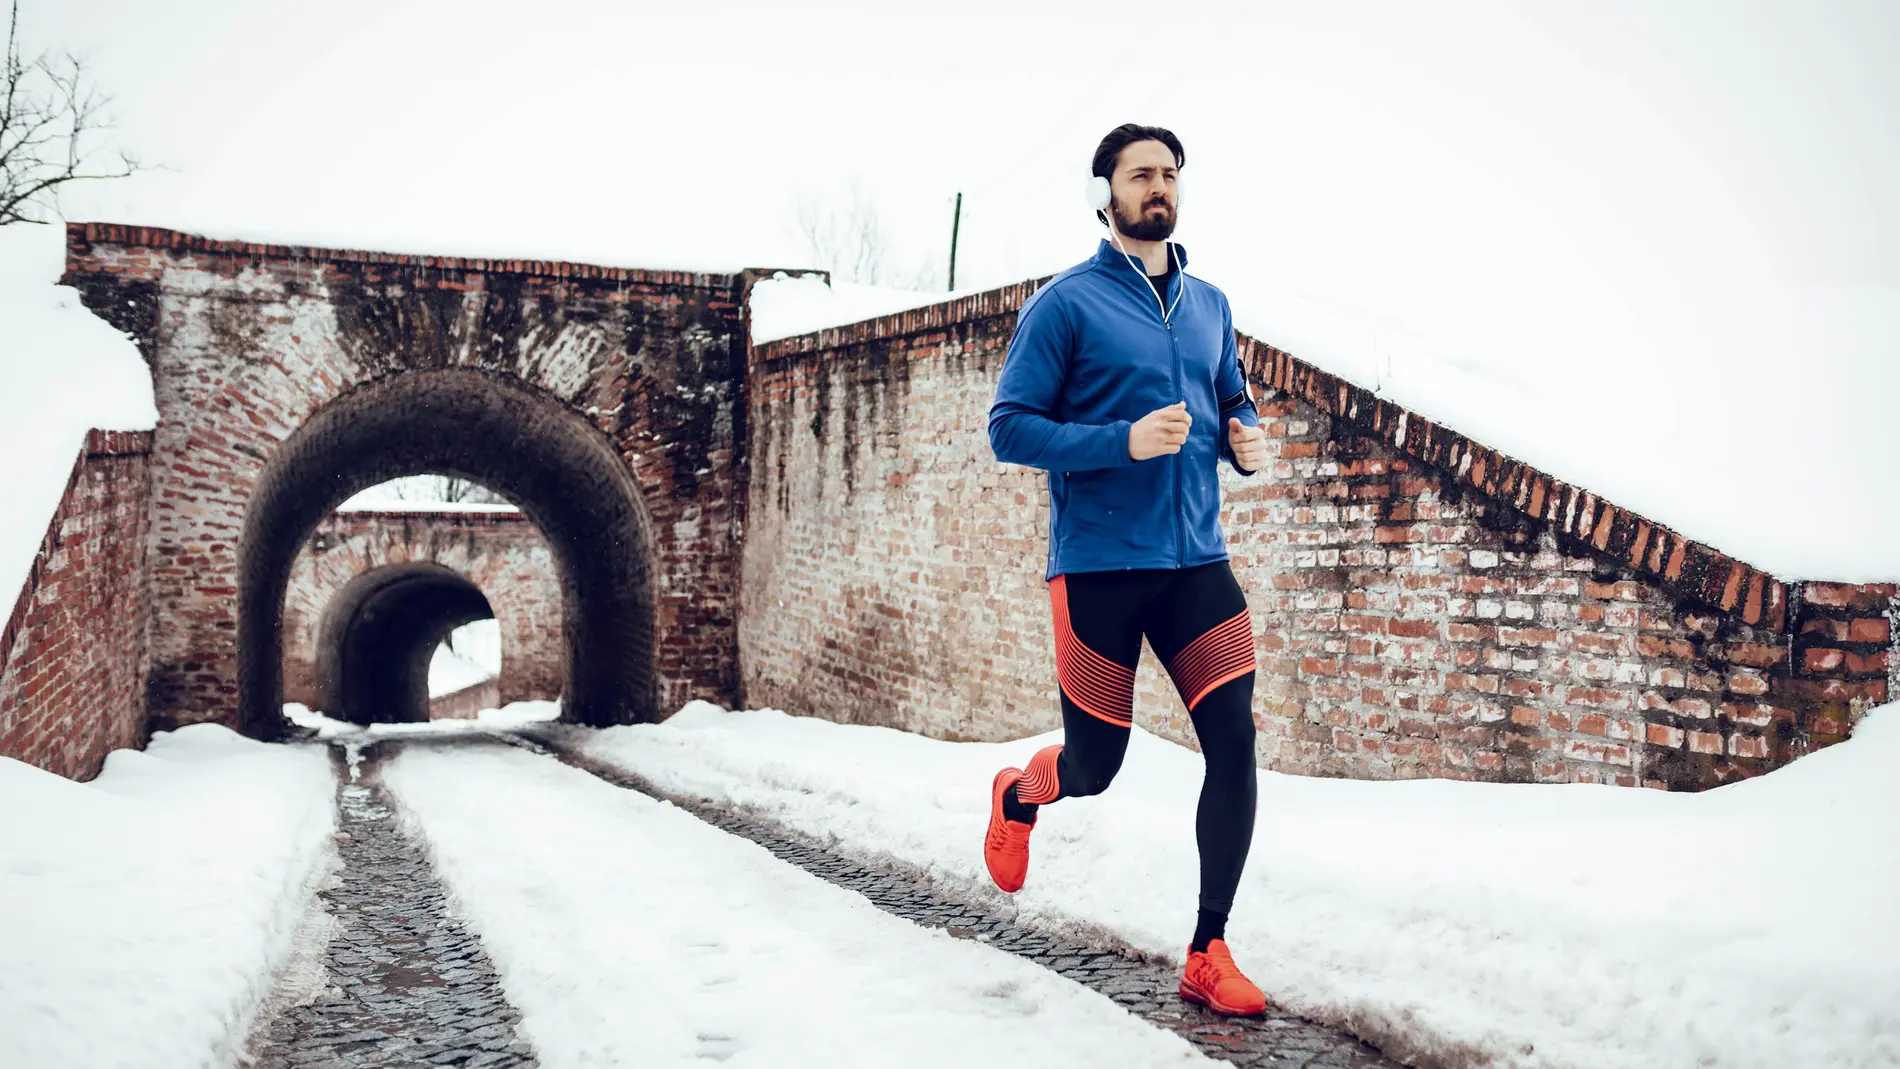 Correr en invierno aumenta el riesgo de lesiones musculares si no se calienta bien previamente